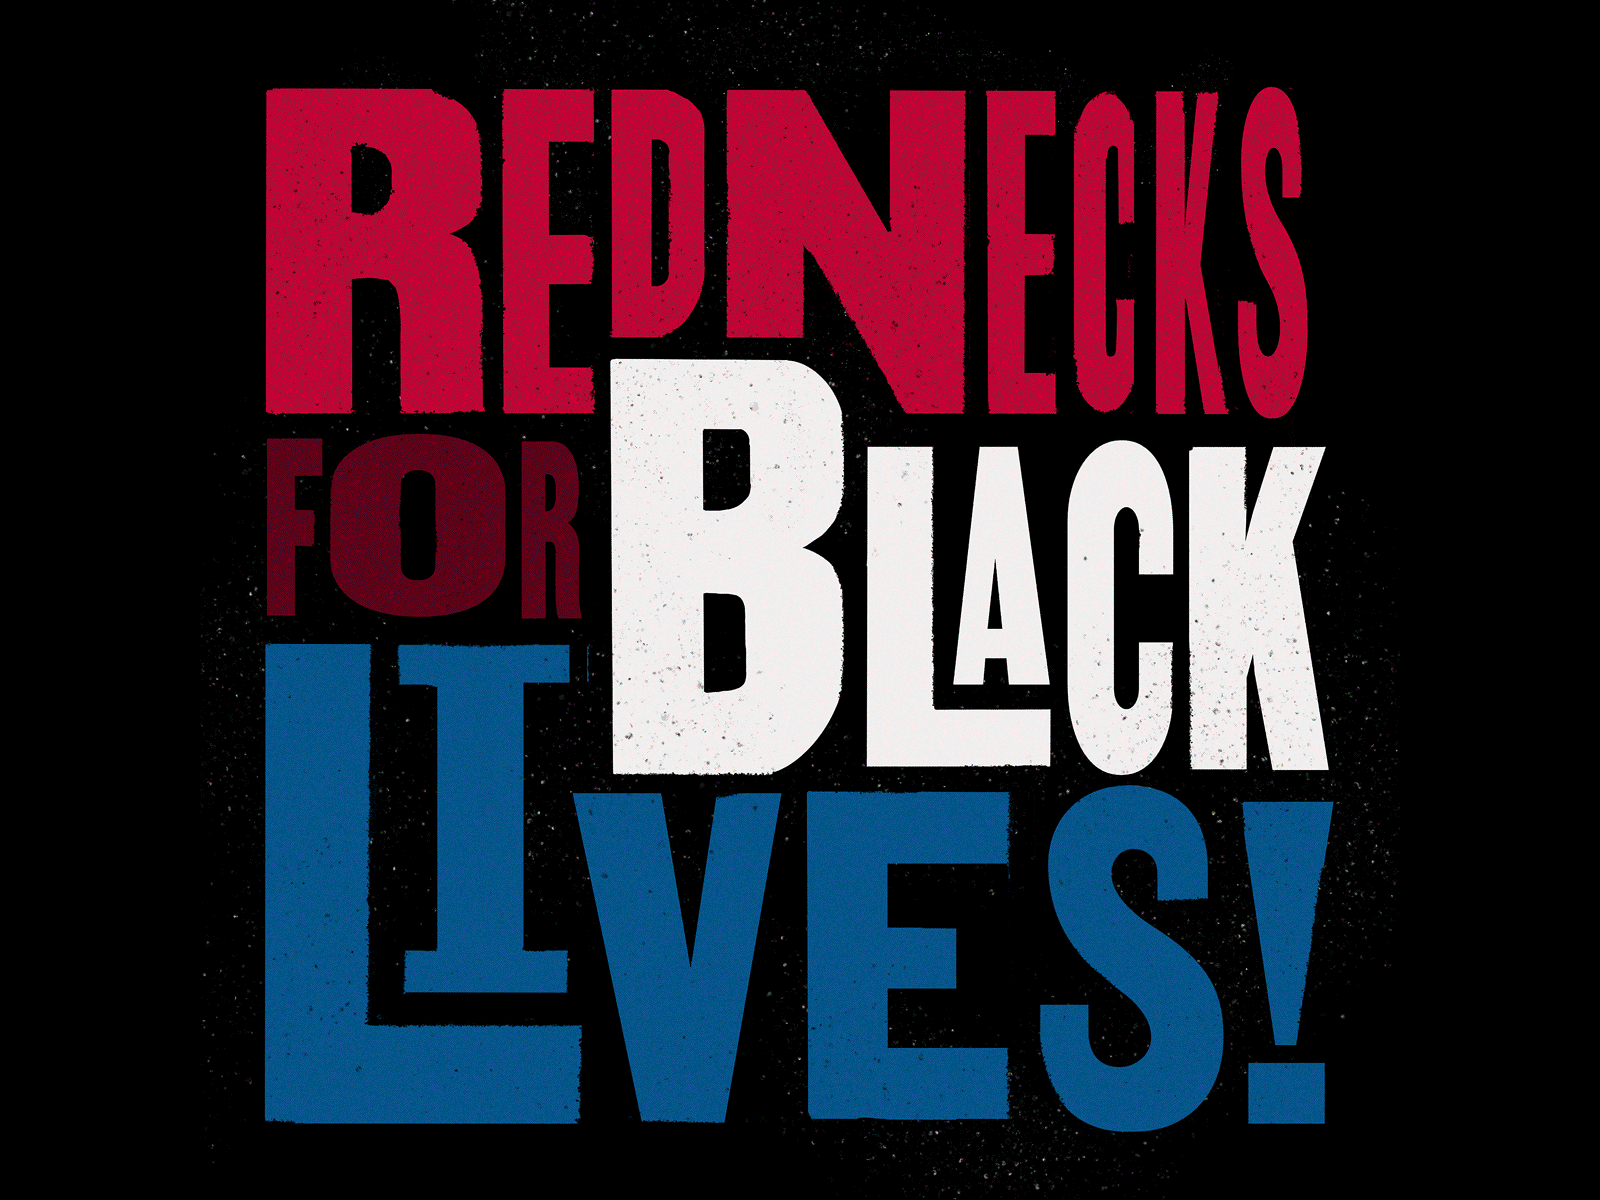 Rednecks For Black Lives